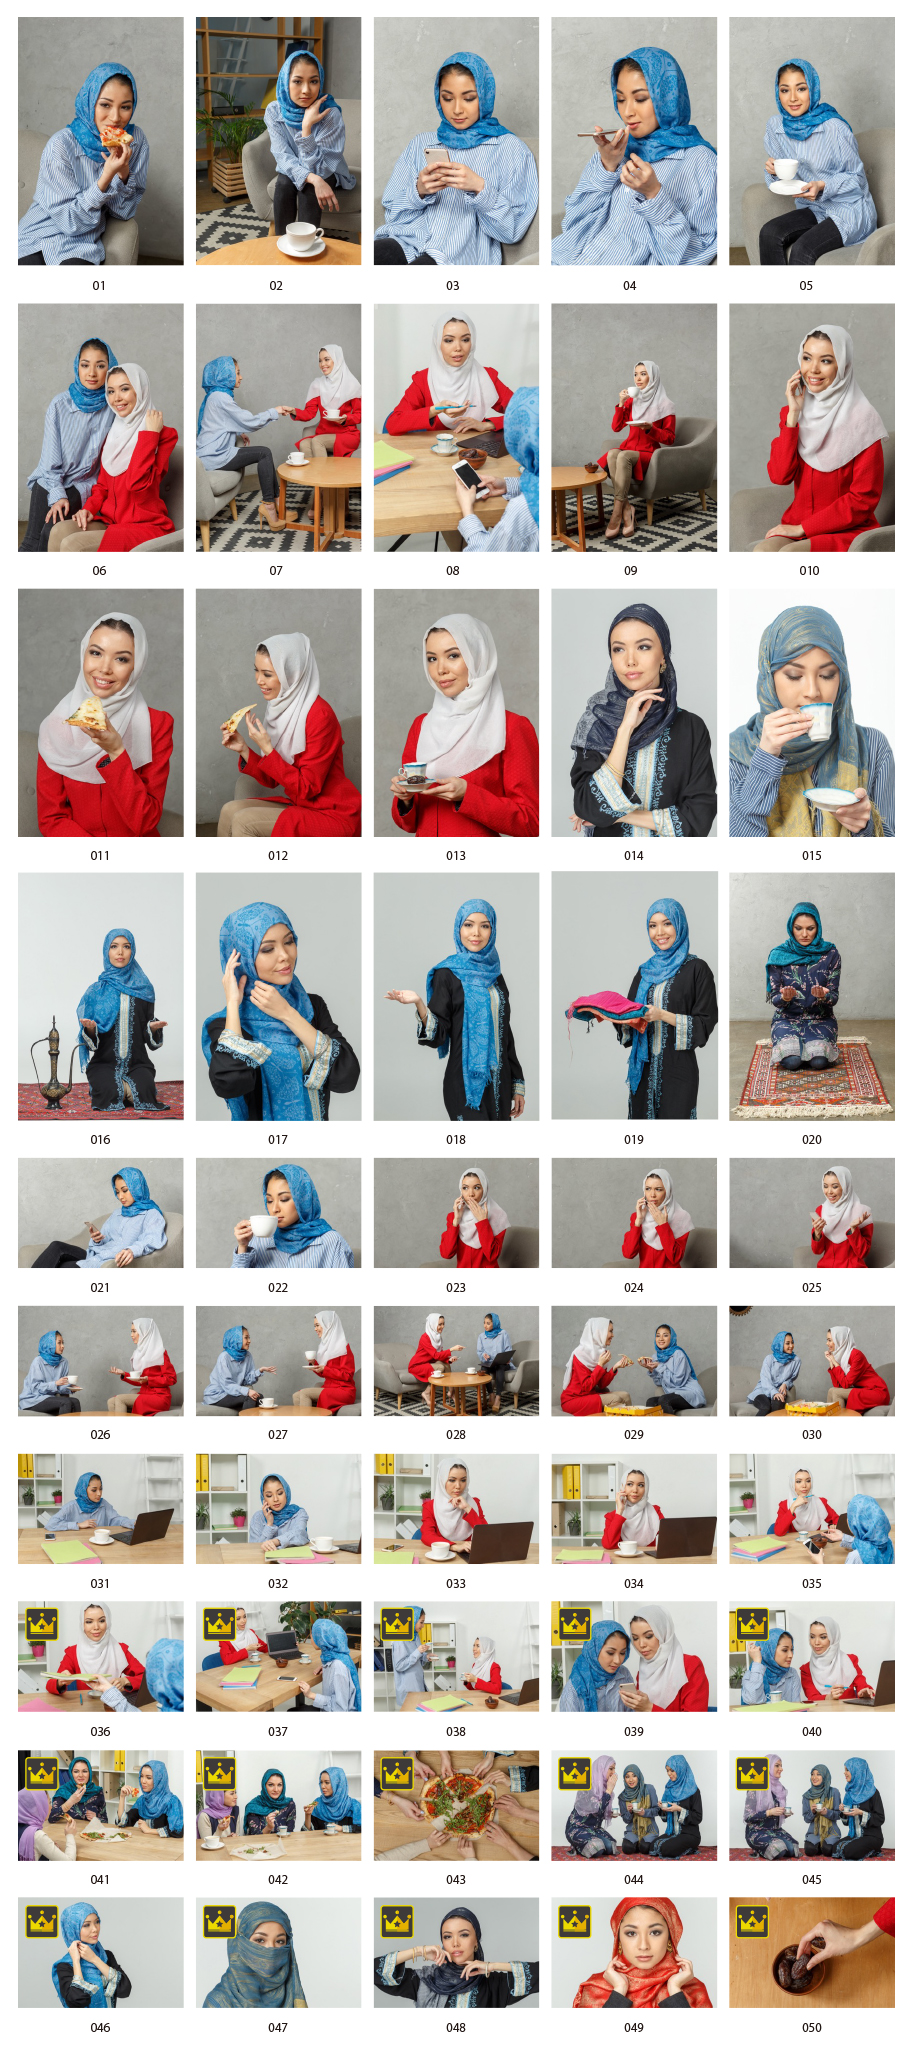 ヒジャブのアジア人女性写真素材